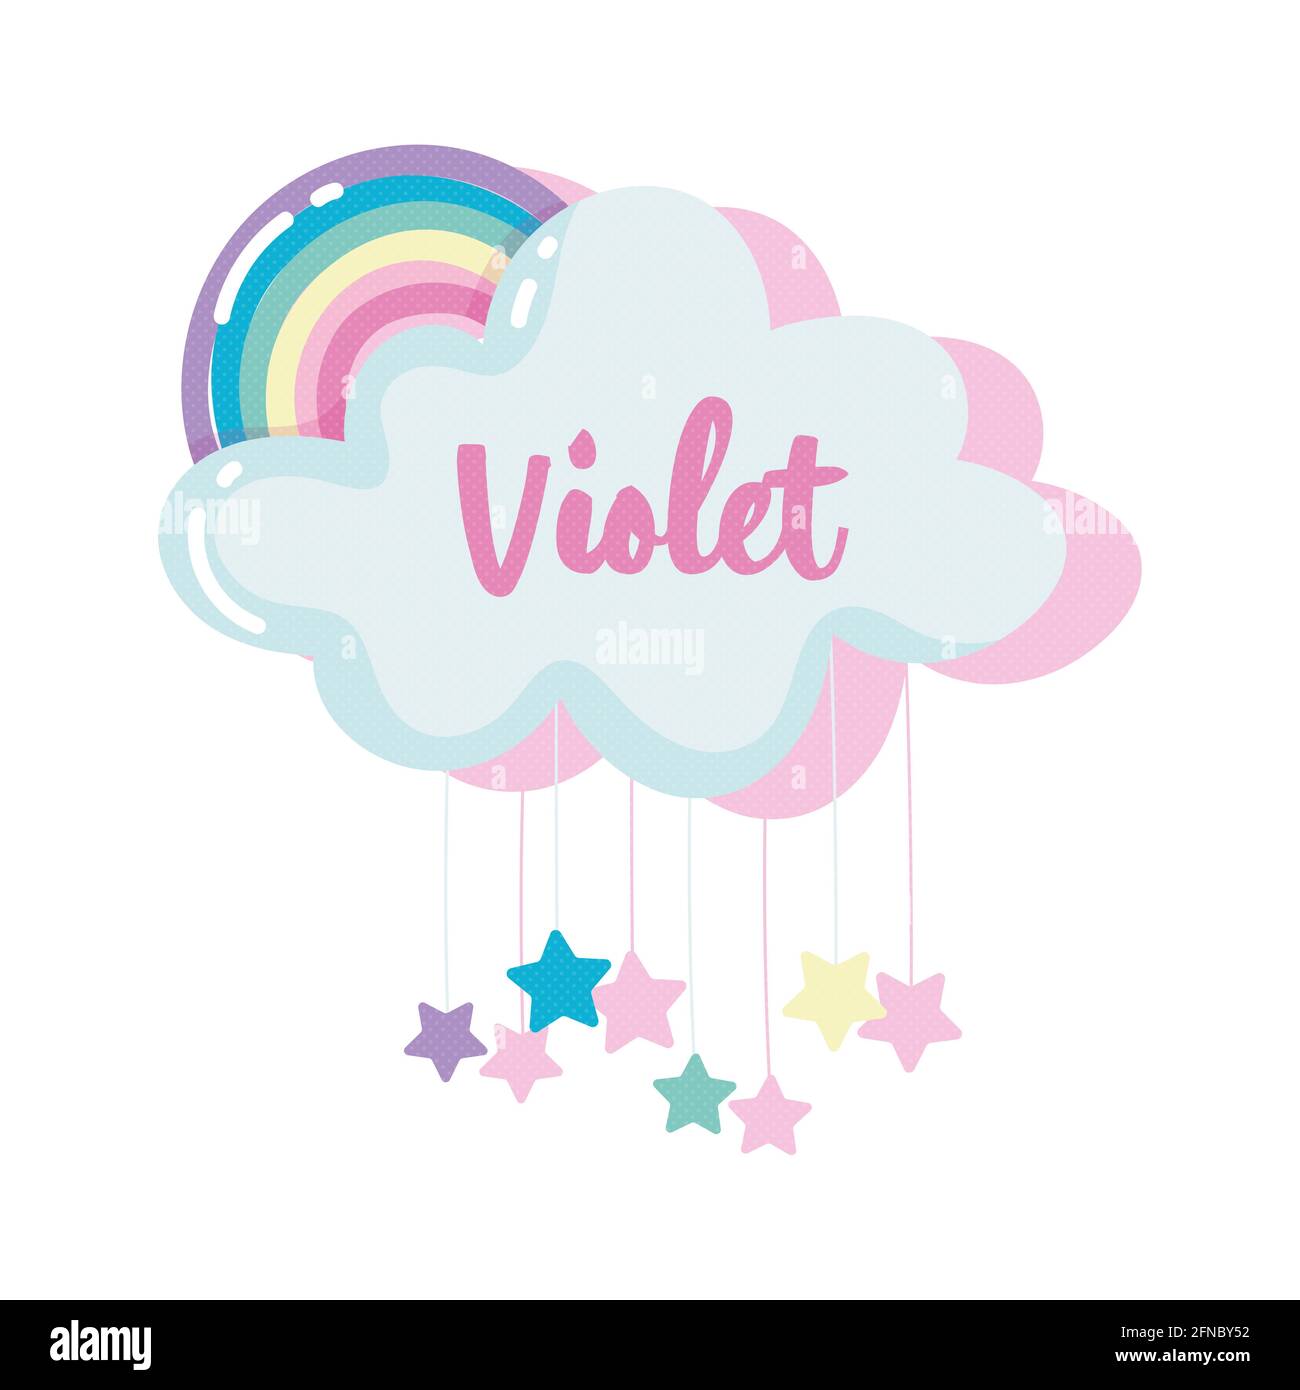 violet girl name Stock Photo